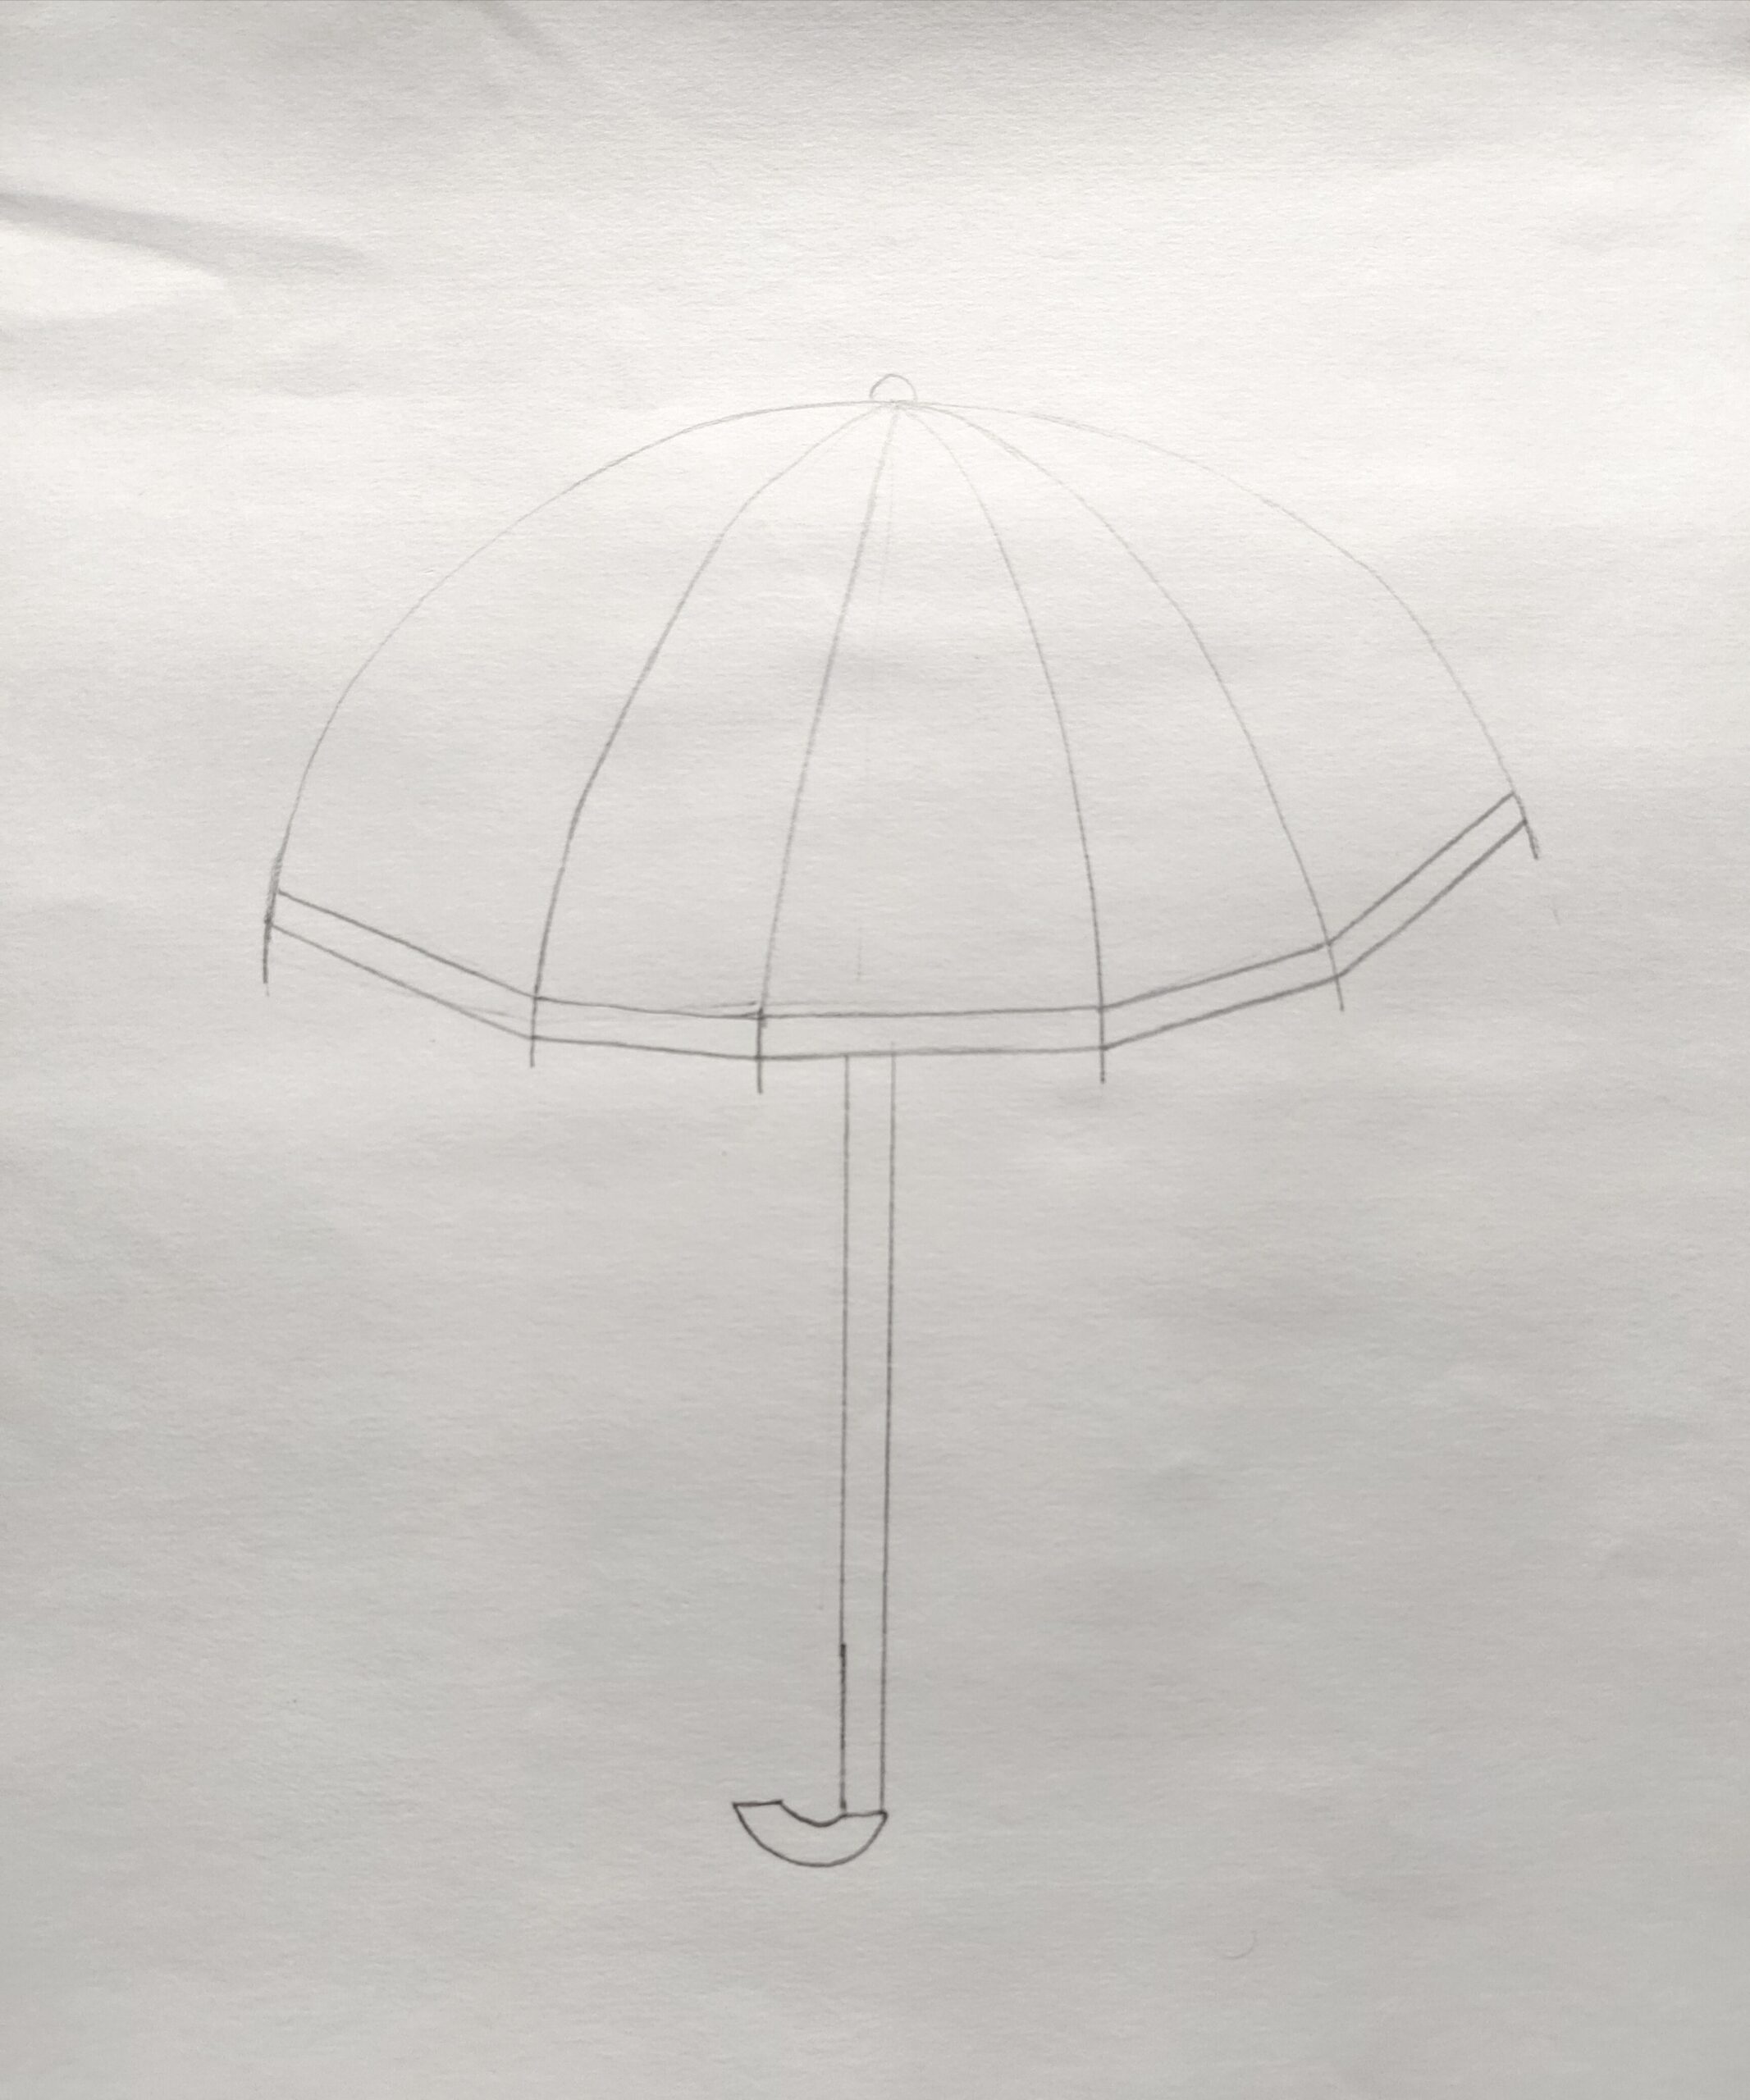 Umbrella hand drawn sketch Royalty Free Vector Image